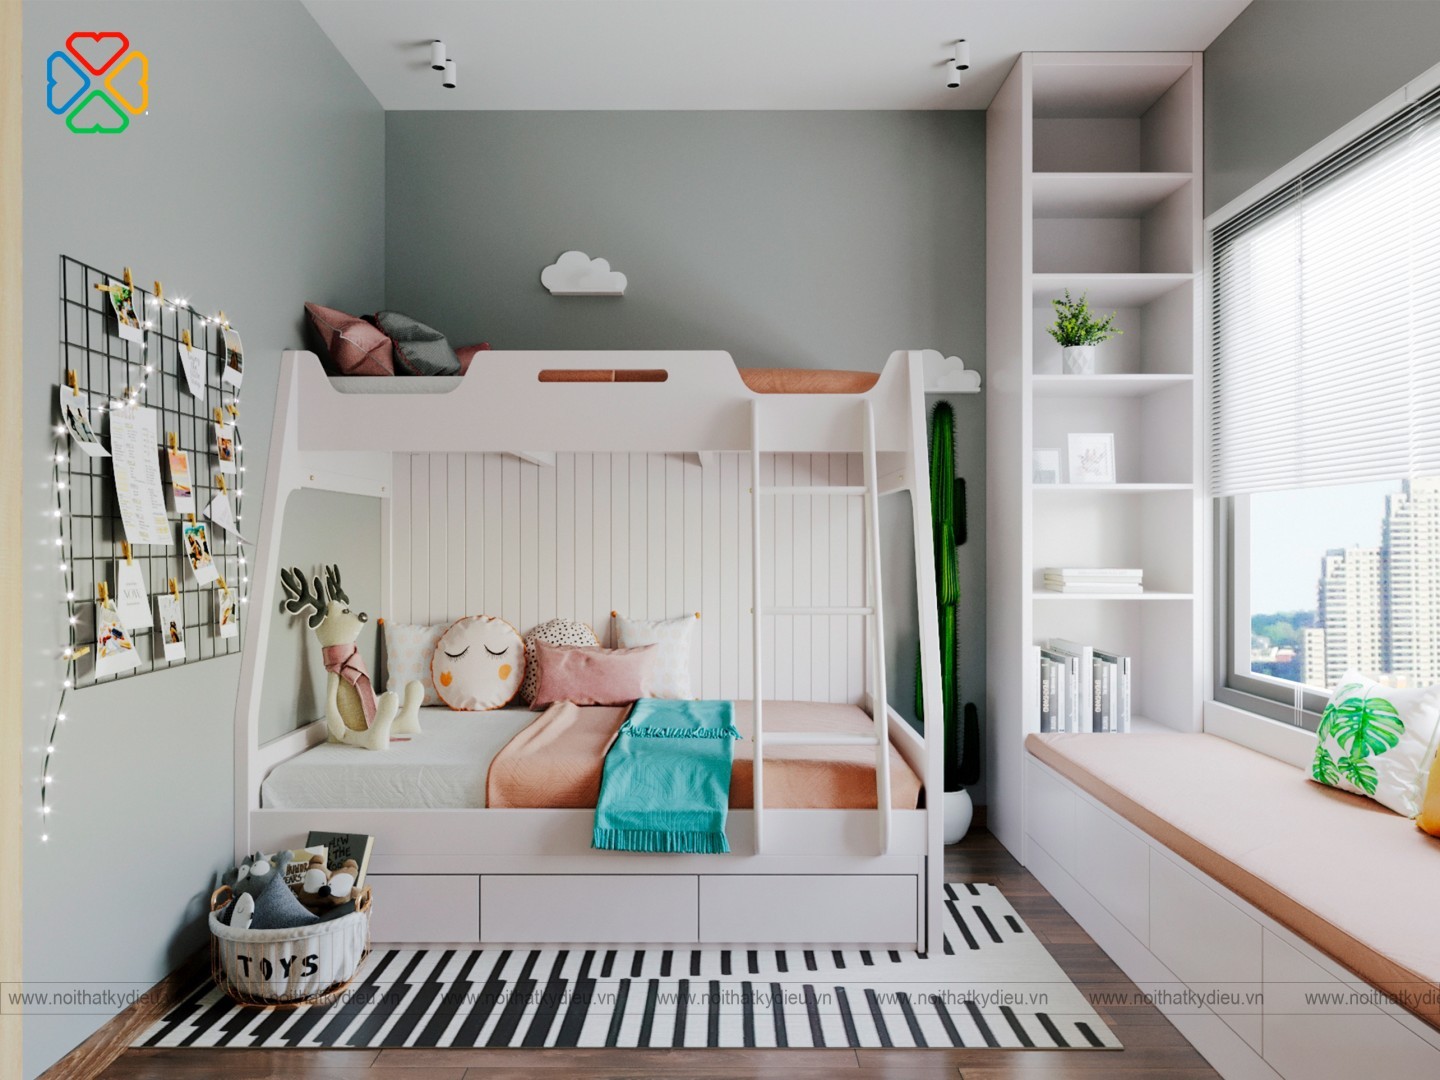 Sở hữu một chiếc giường tầng thông minh cho bé trai là cơ hội để tạo nên một căn phòng riêng cho bé